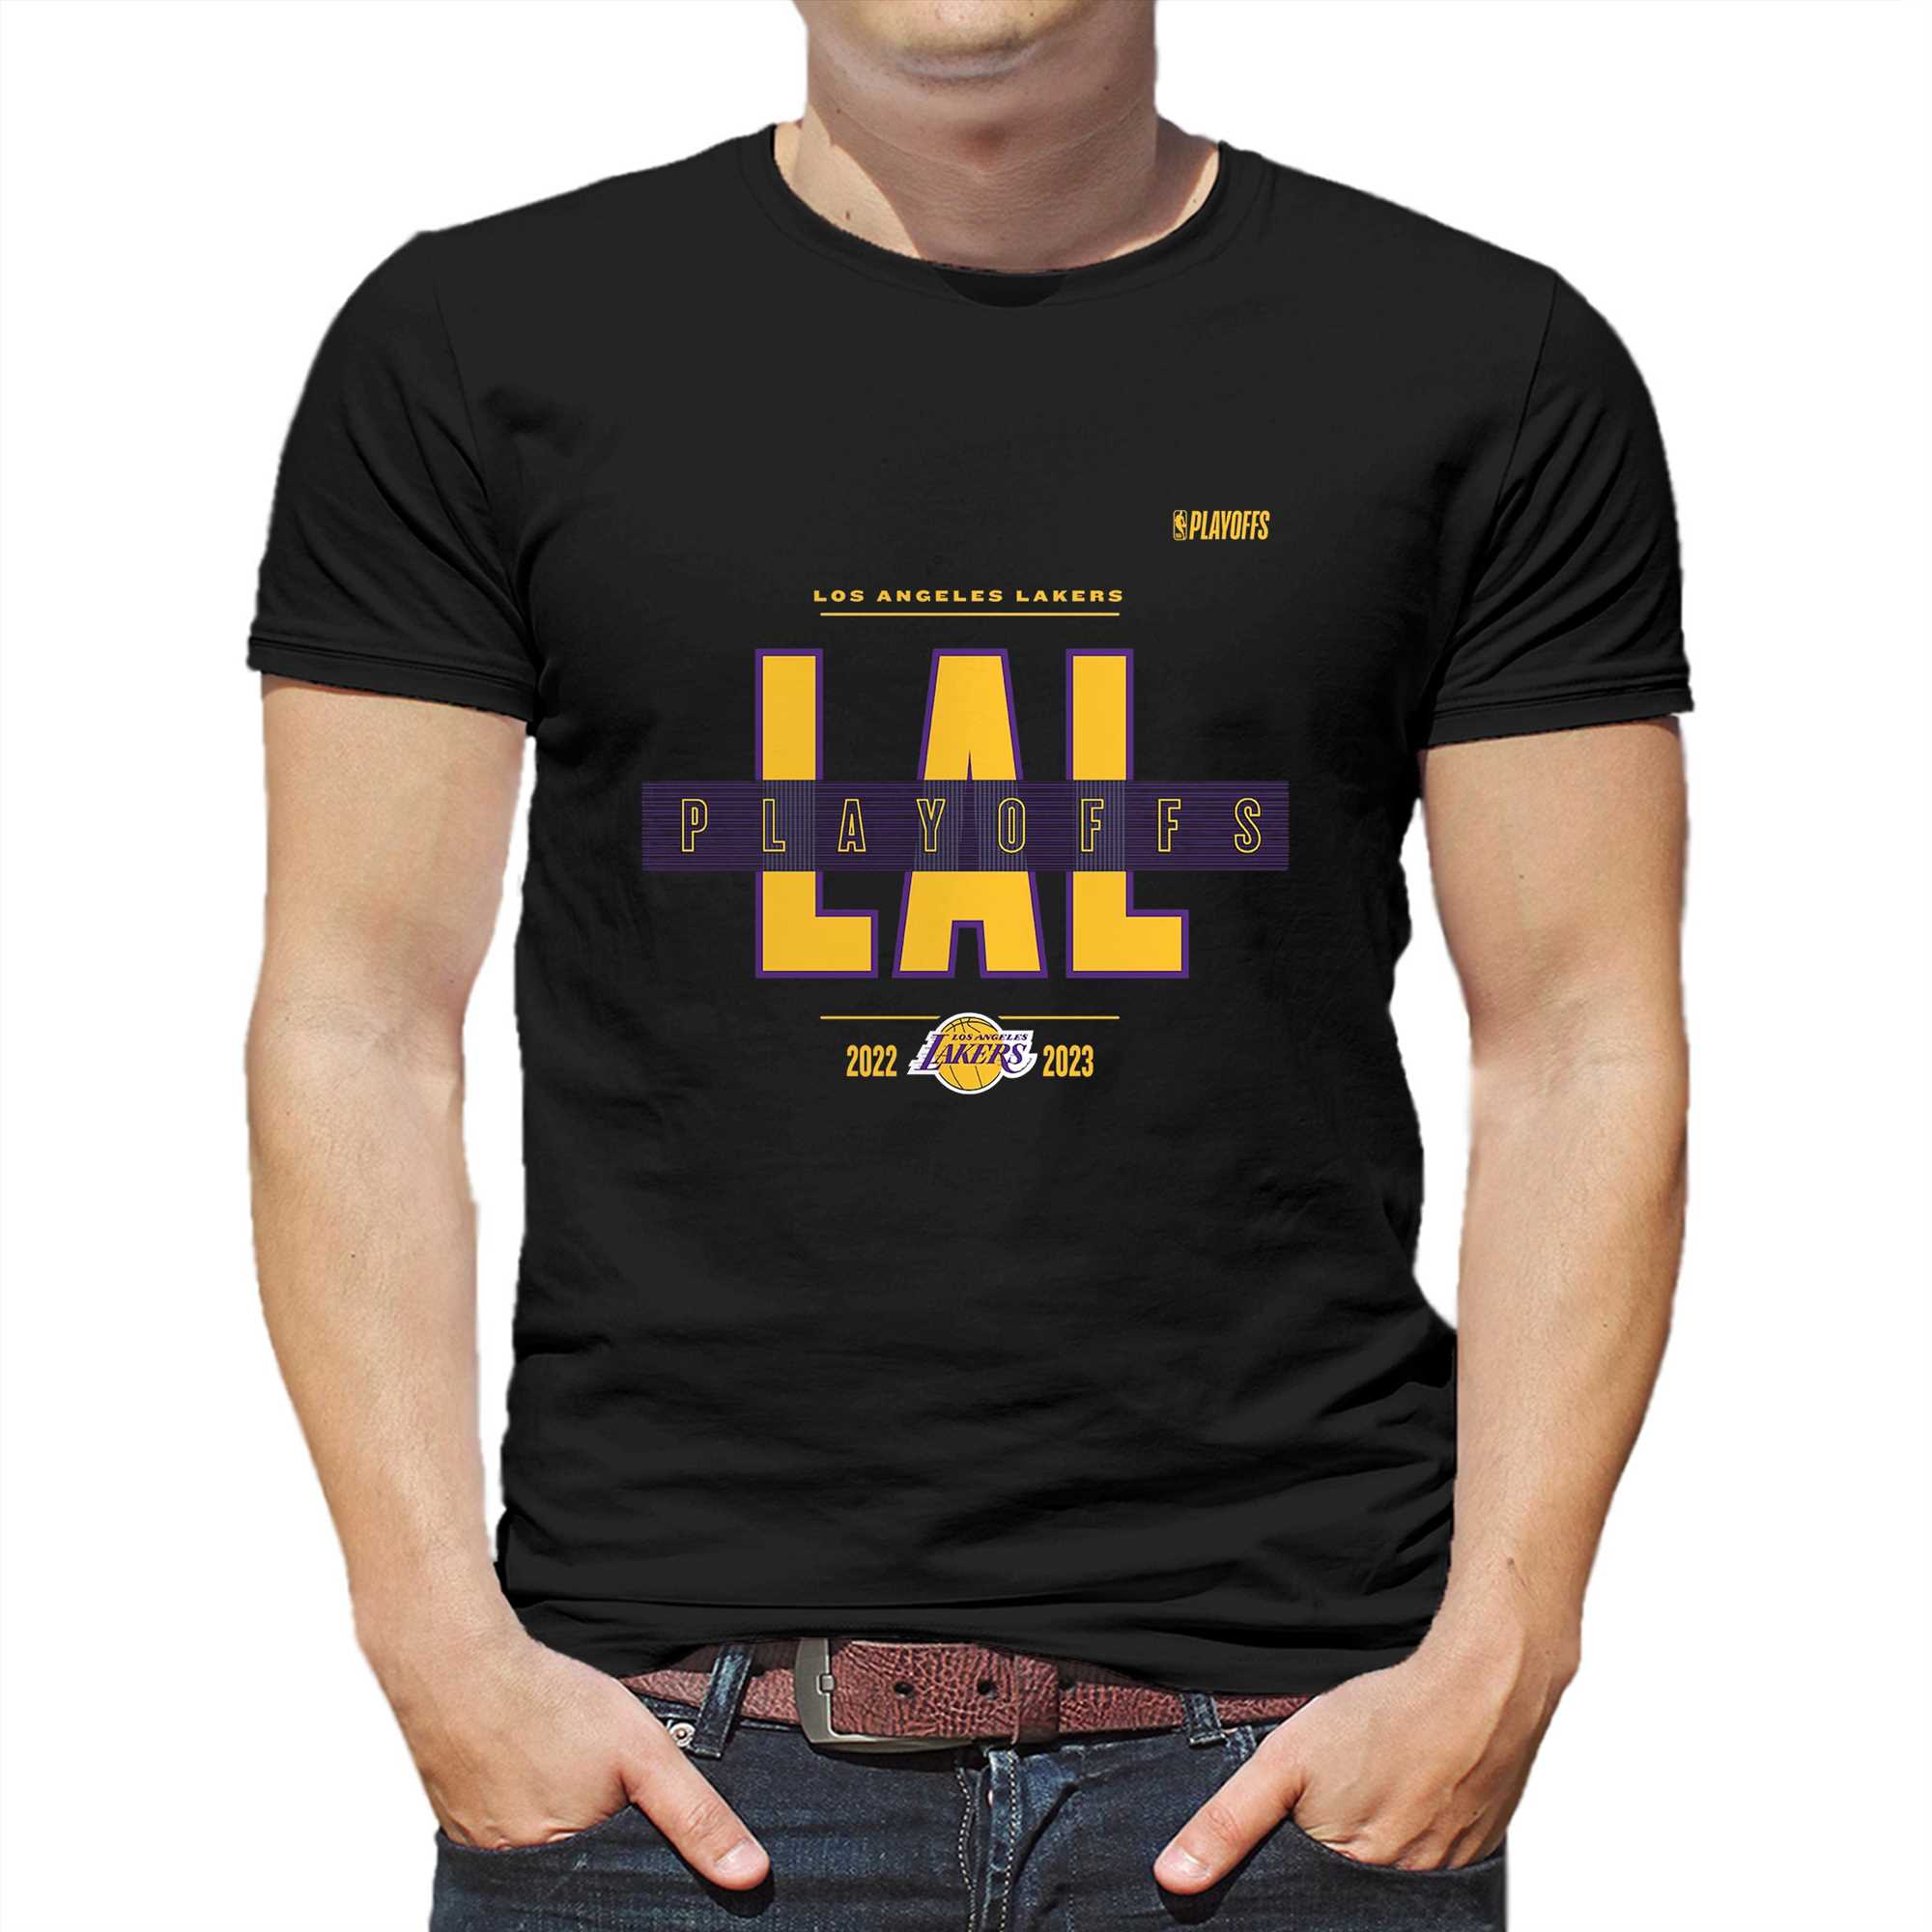 design lakers t shirt